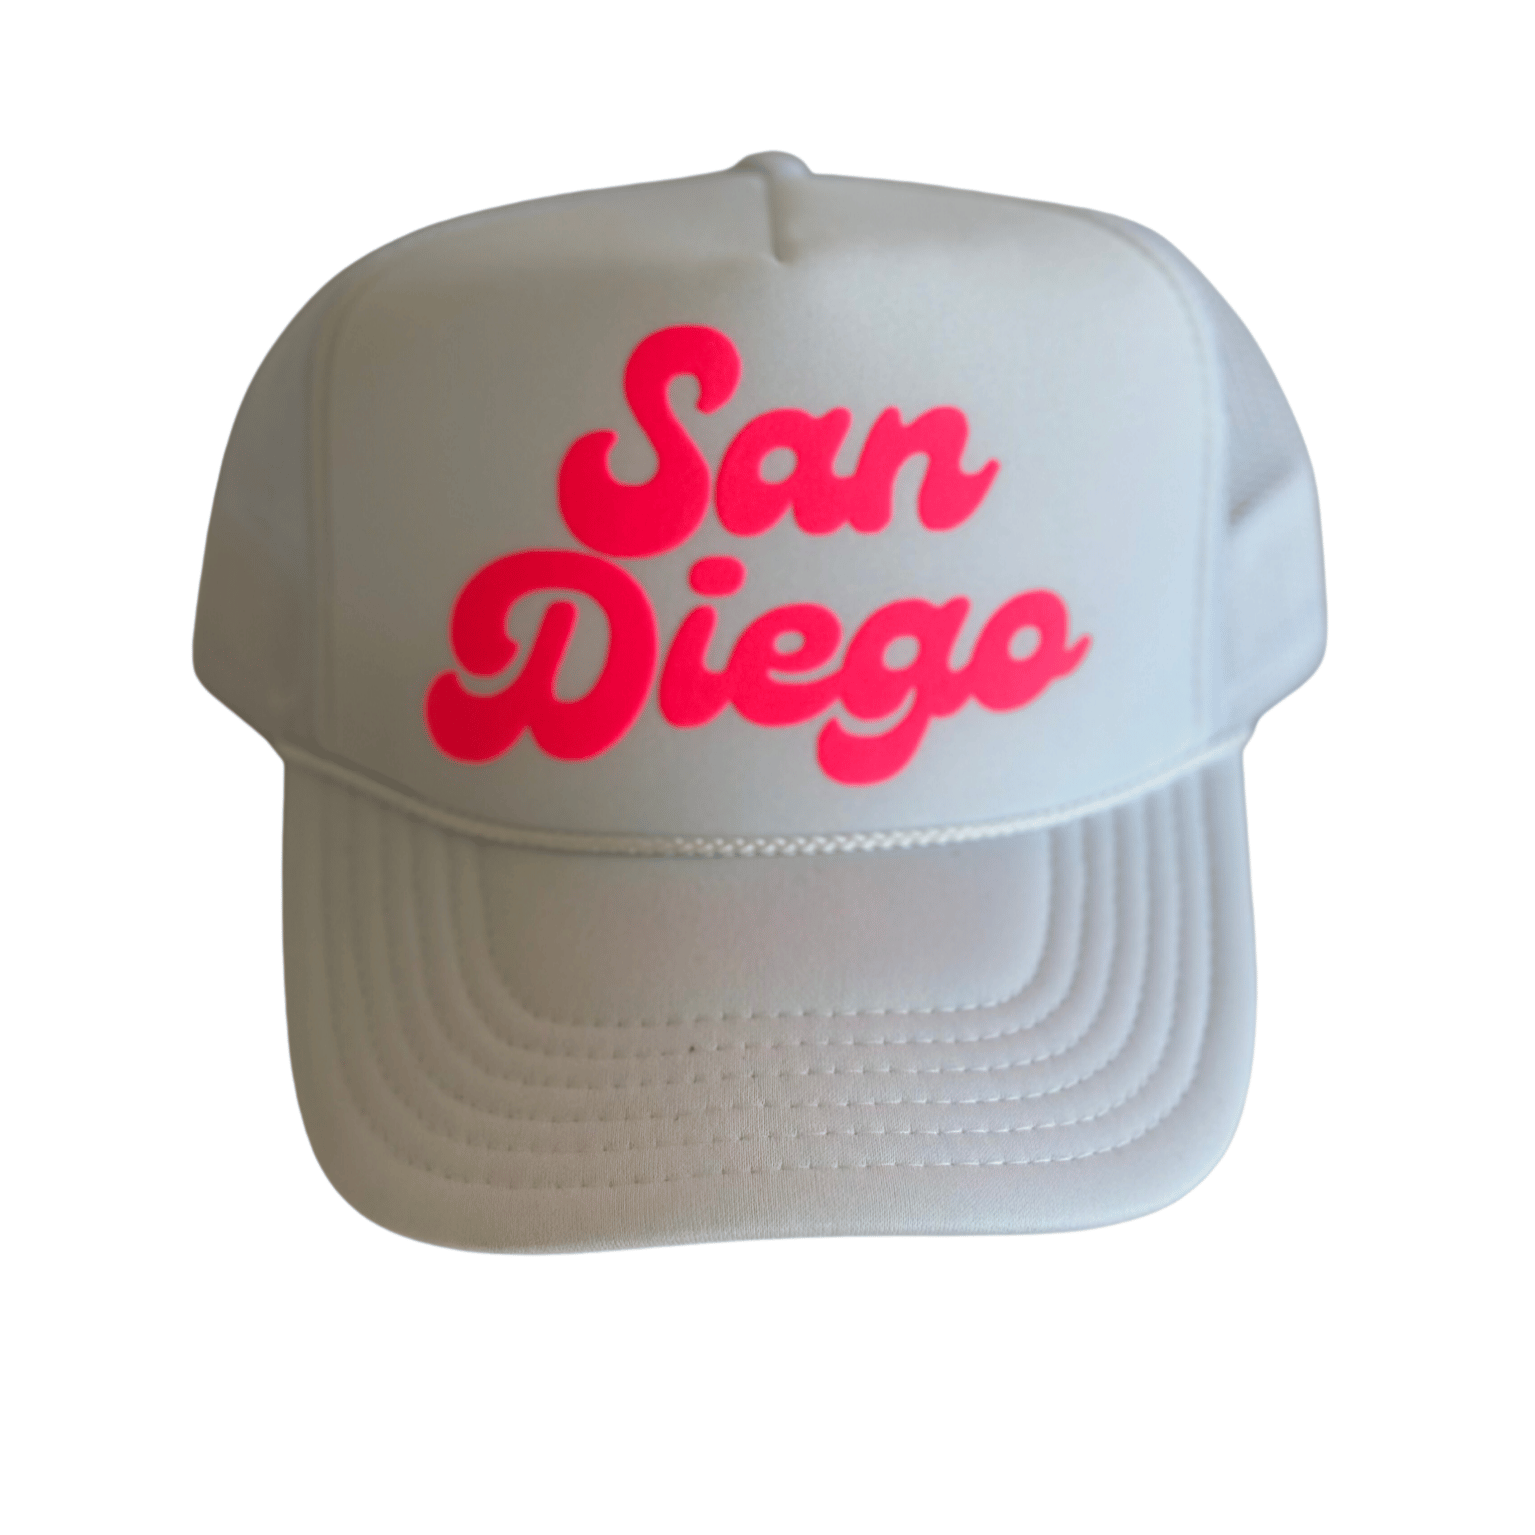 San Diego Trucker Hats